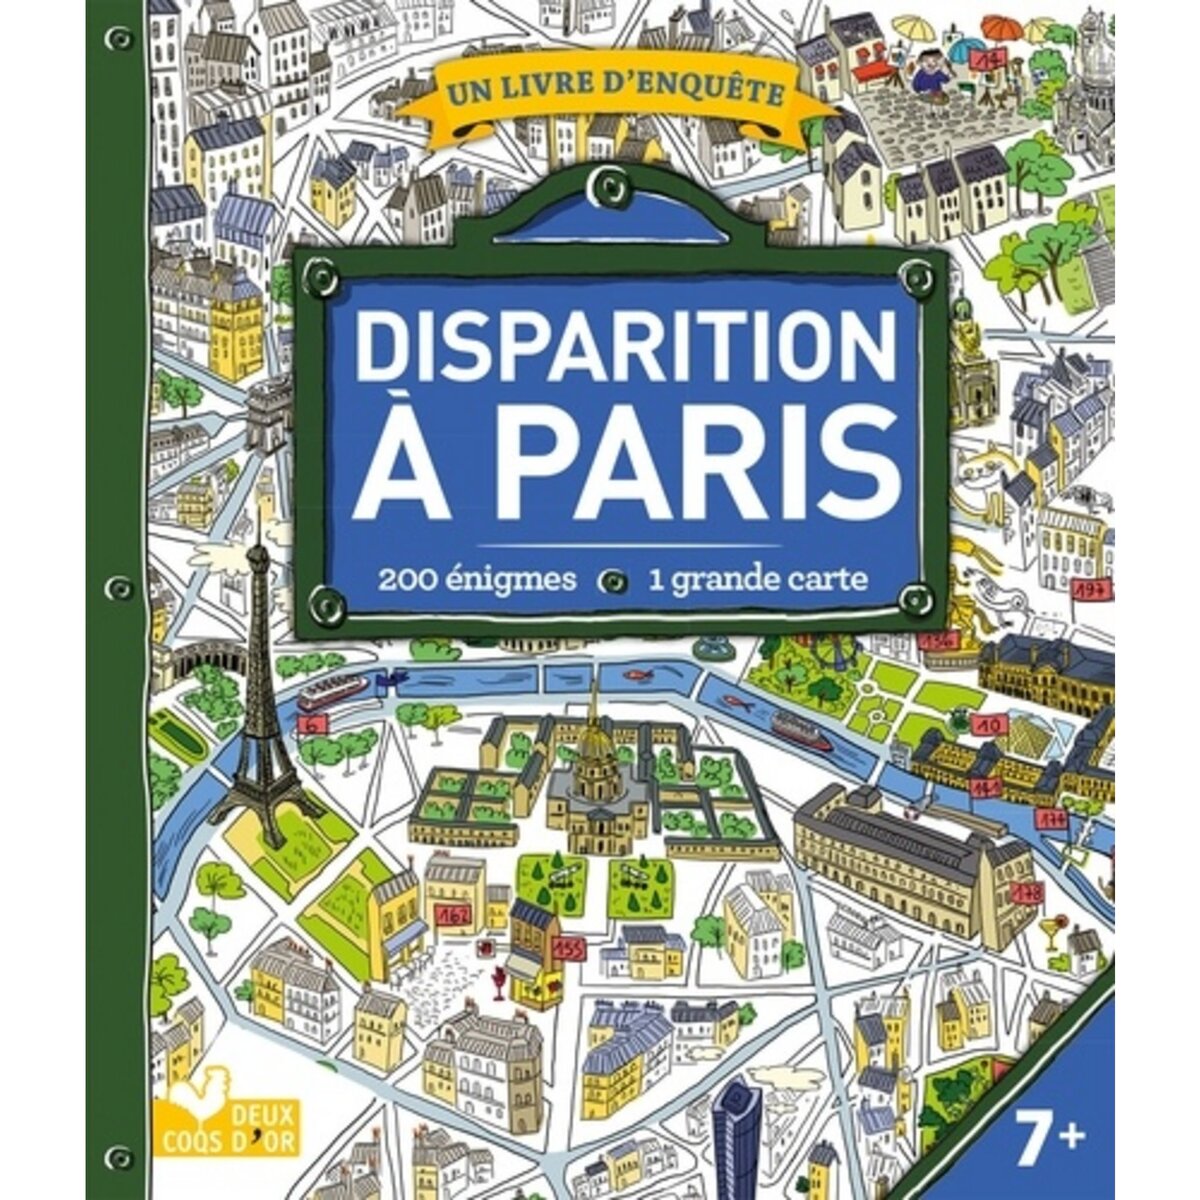  DISPARITION A PARIS. + DE 1000 ENIGMES. AVEC UNE GRANDE CARTE, Les Fées Hilares